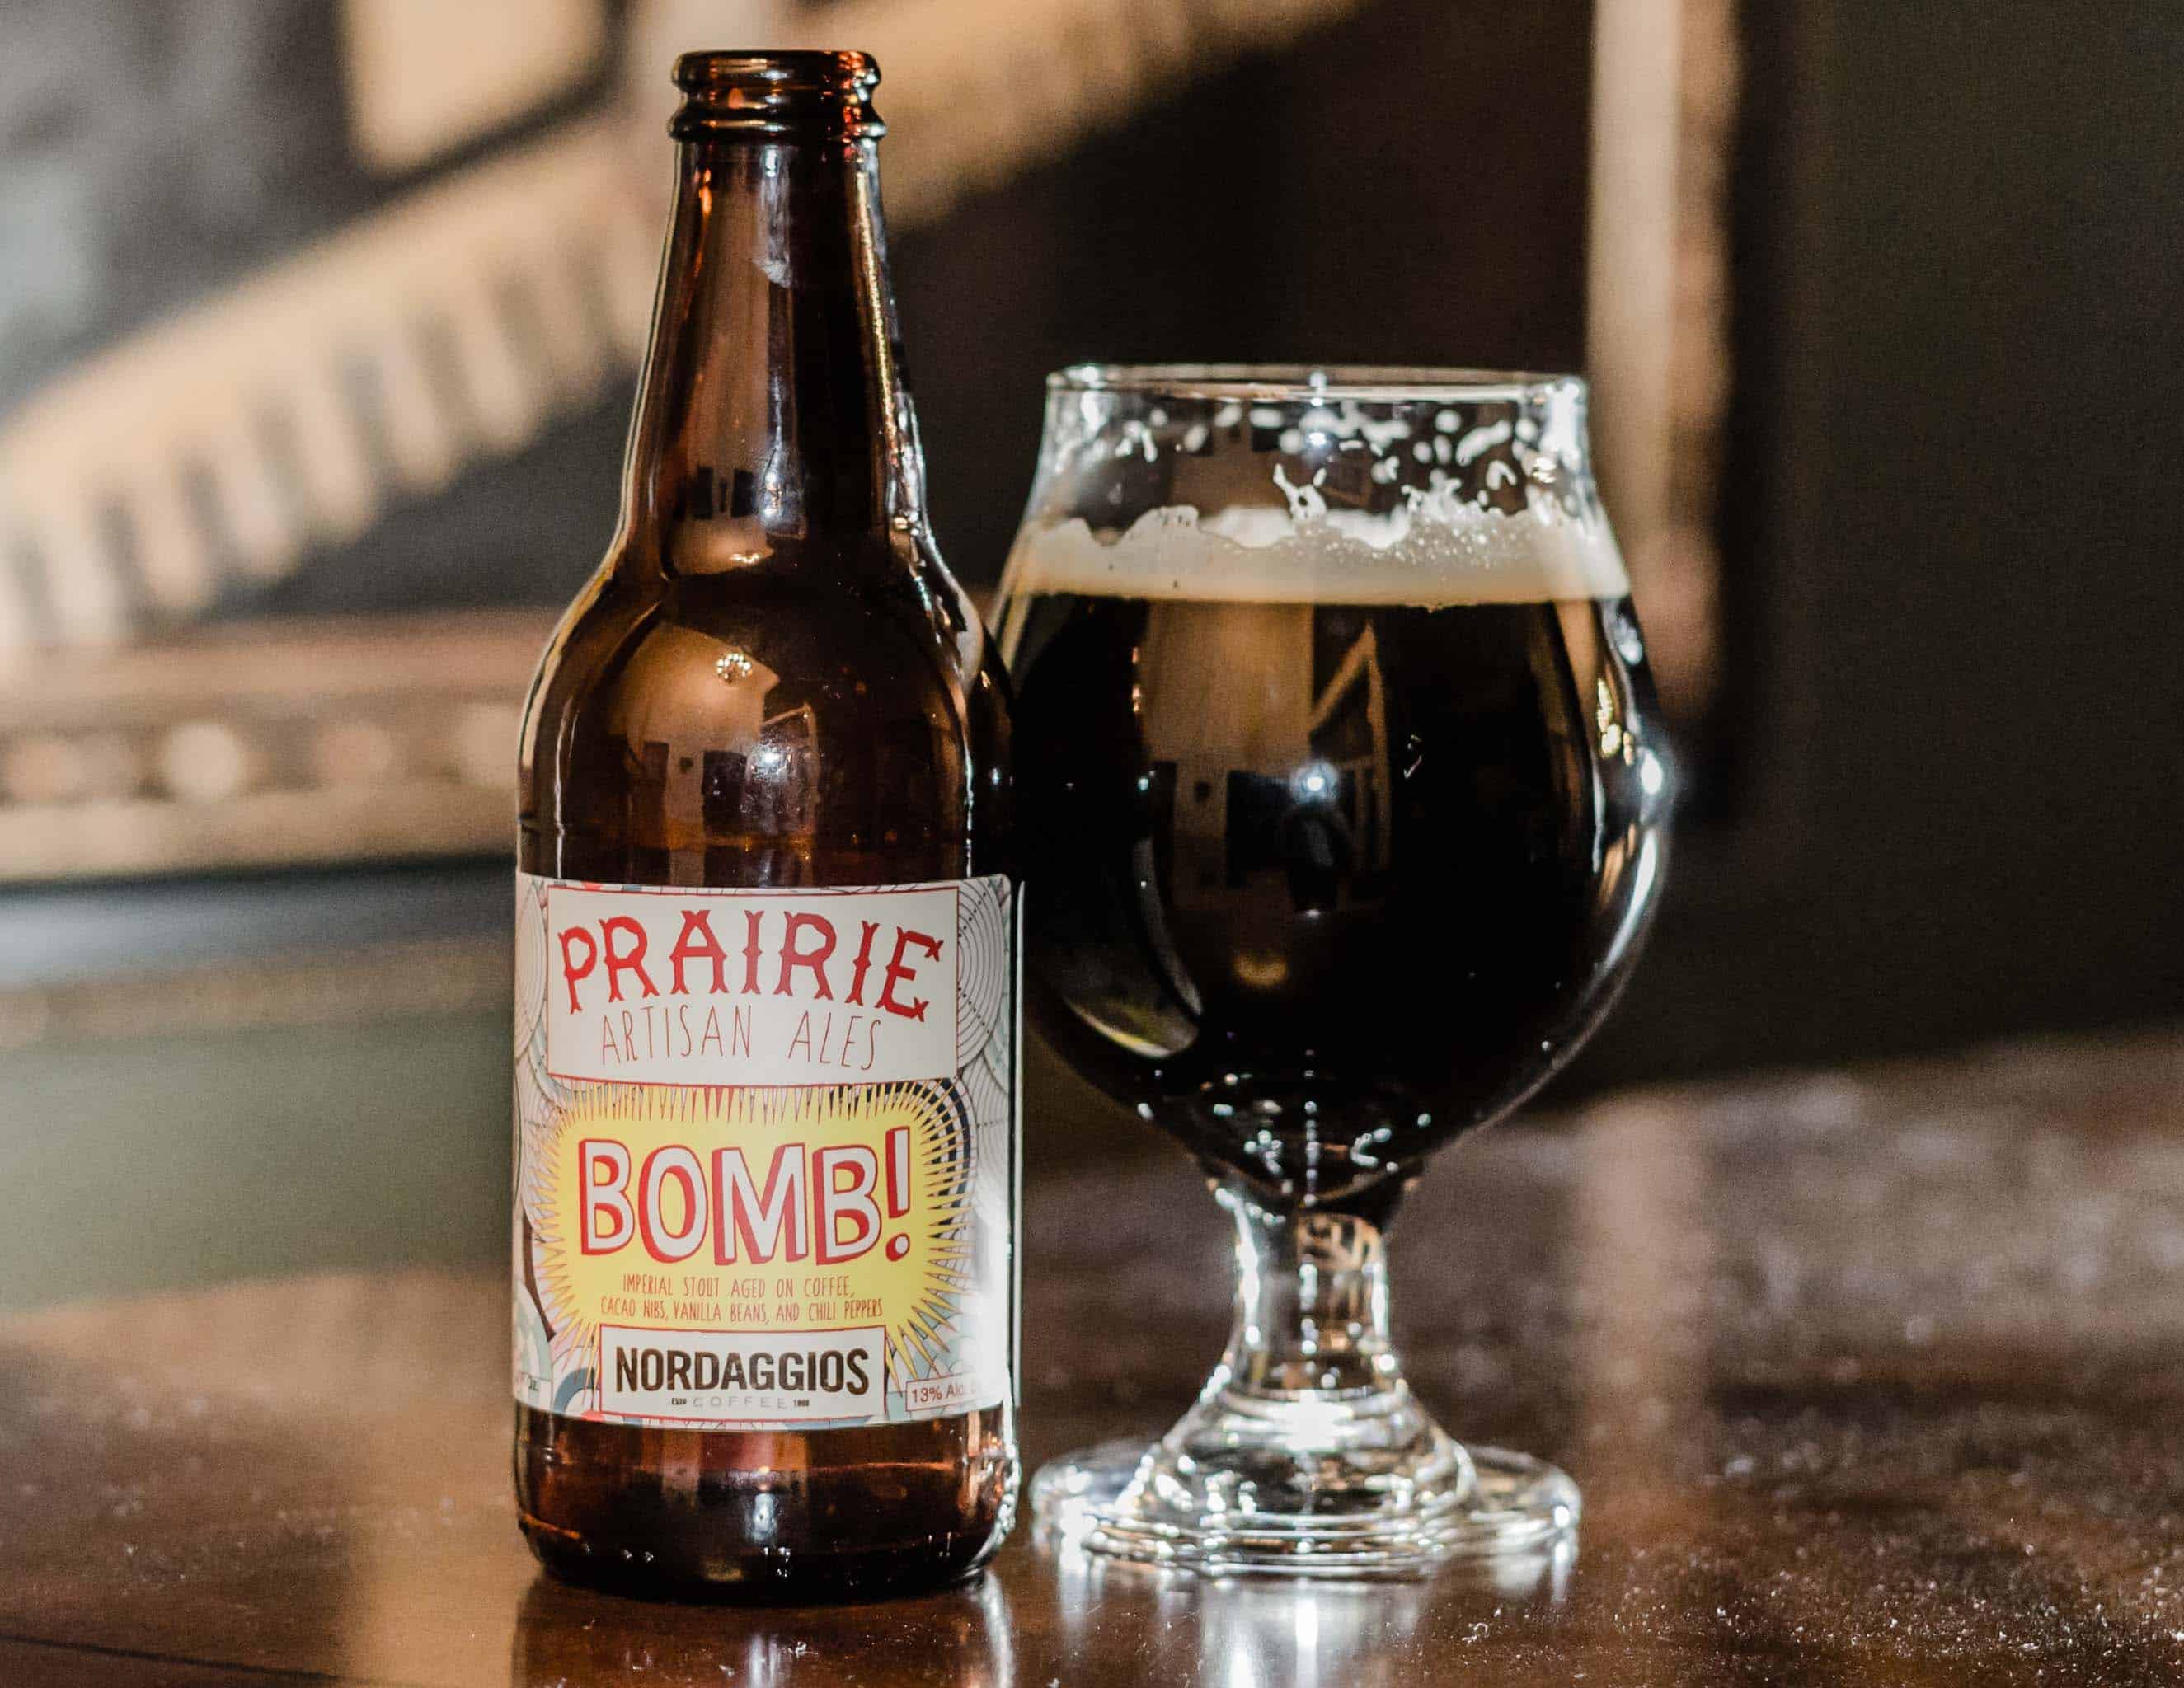 Prairie Bomb! - best tasting beer